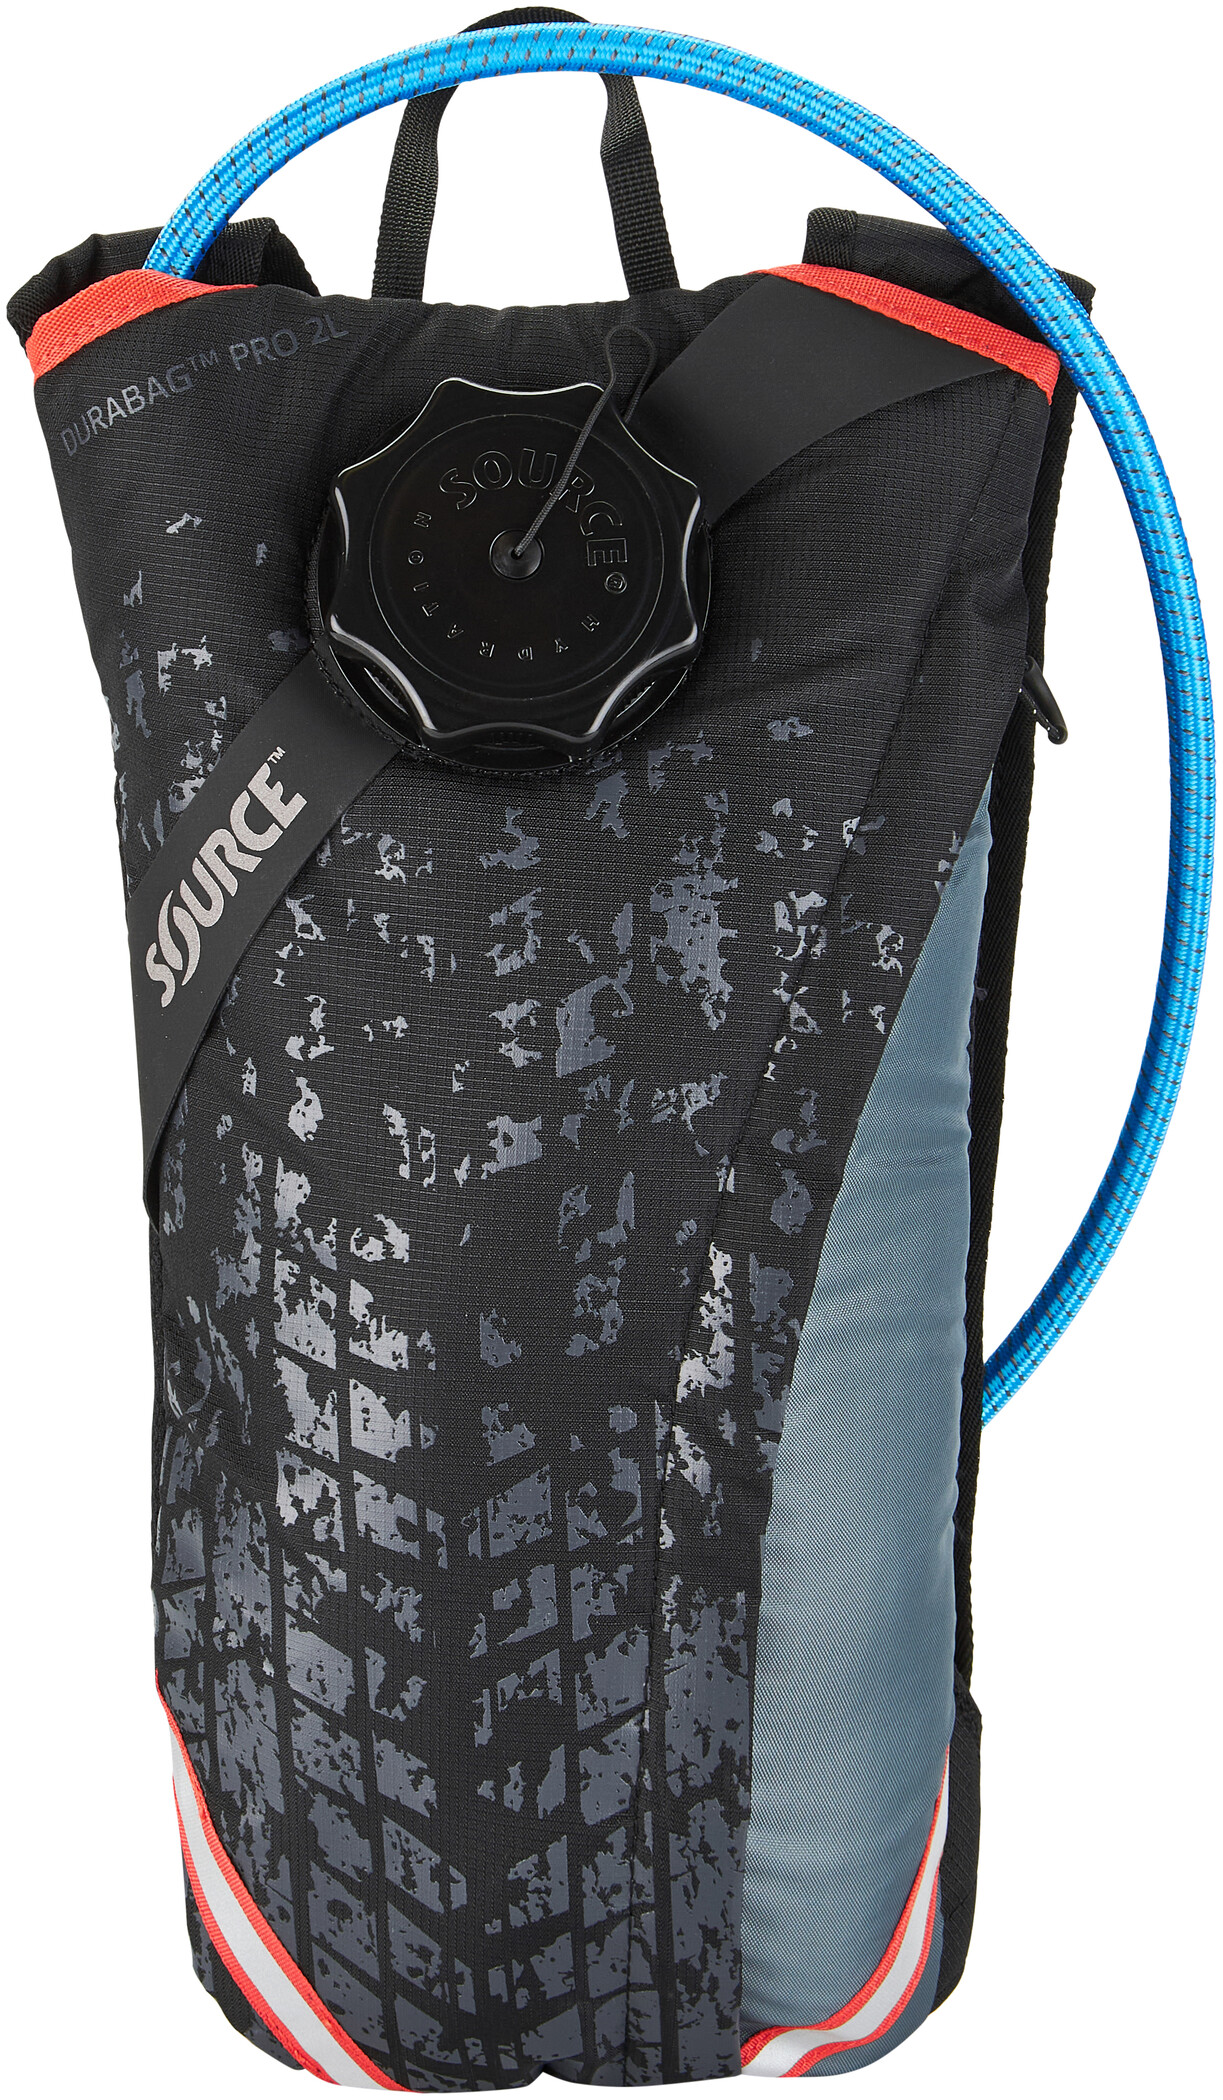 SOURCE Durabag Pro Hydrationspakke 2l, grå/sort | rygsæk og rejsetaske